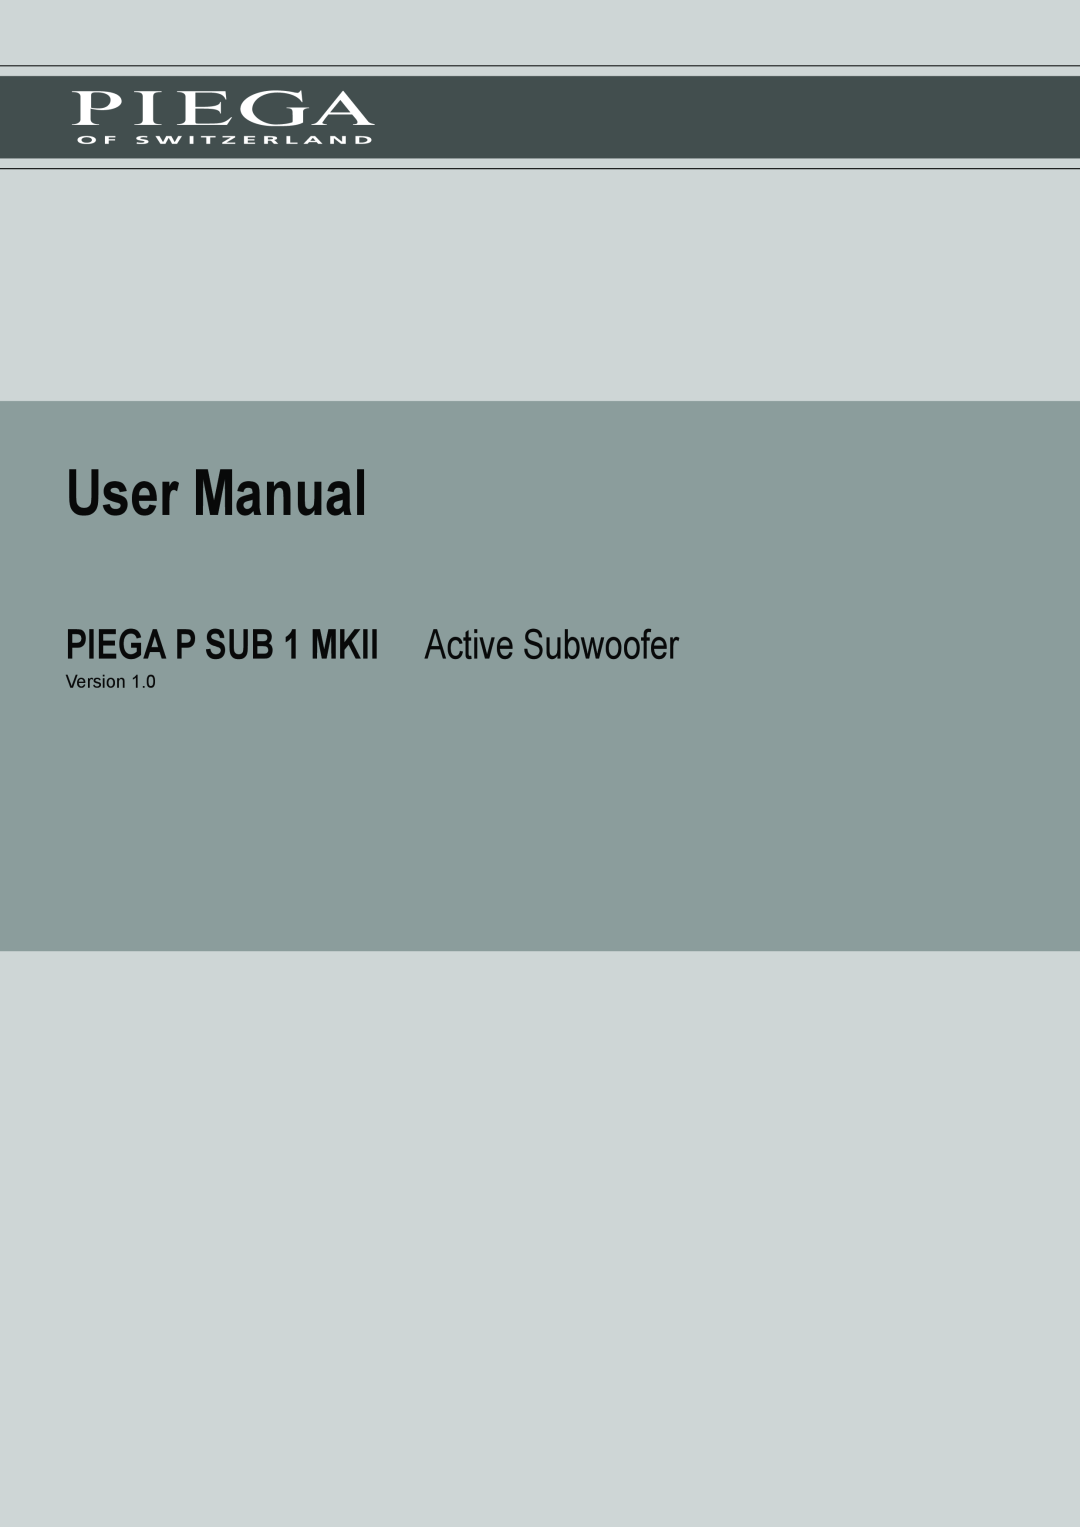 Piega user manual PIEGA P SUB 1 MKII Active Subwoofer, Version 